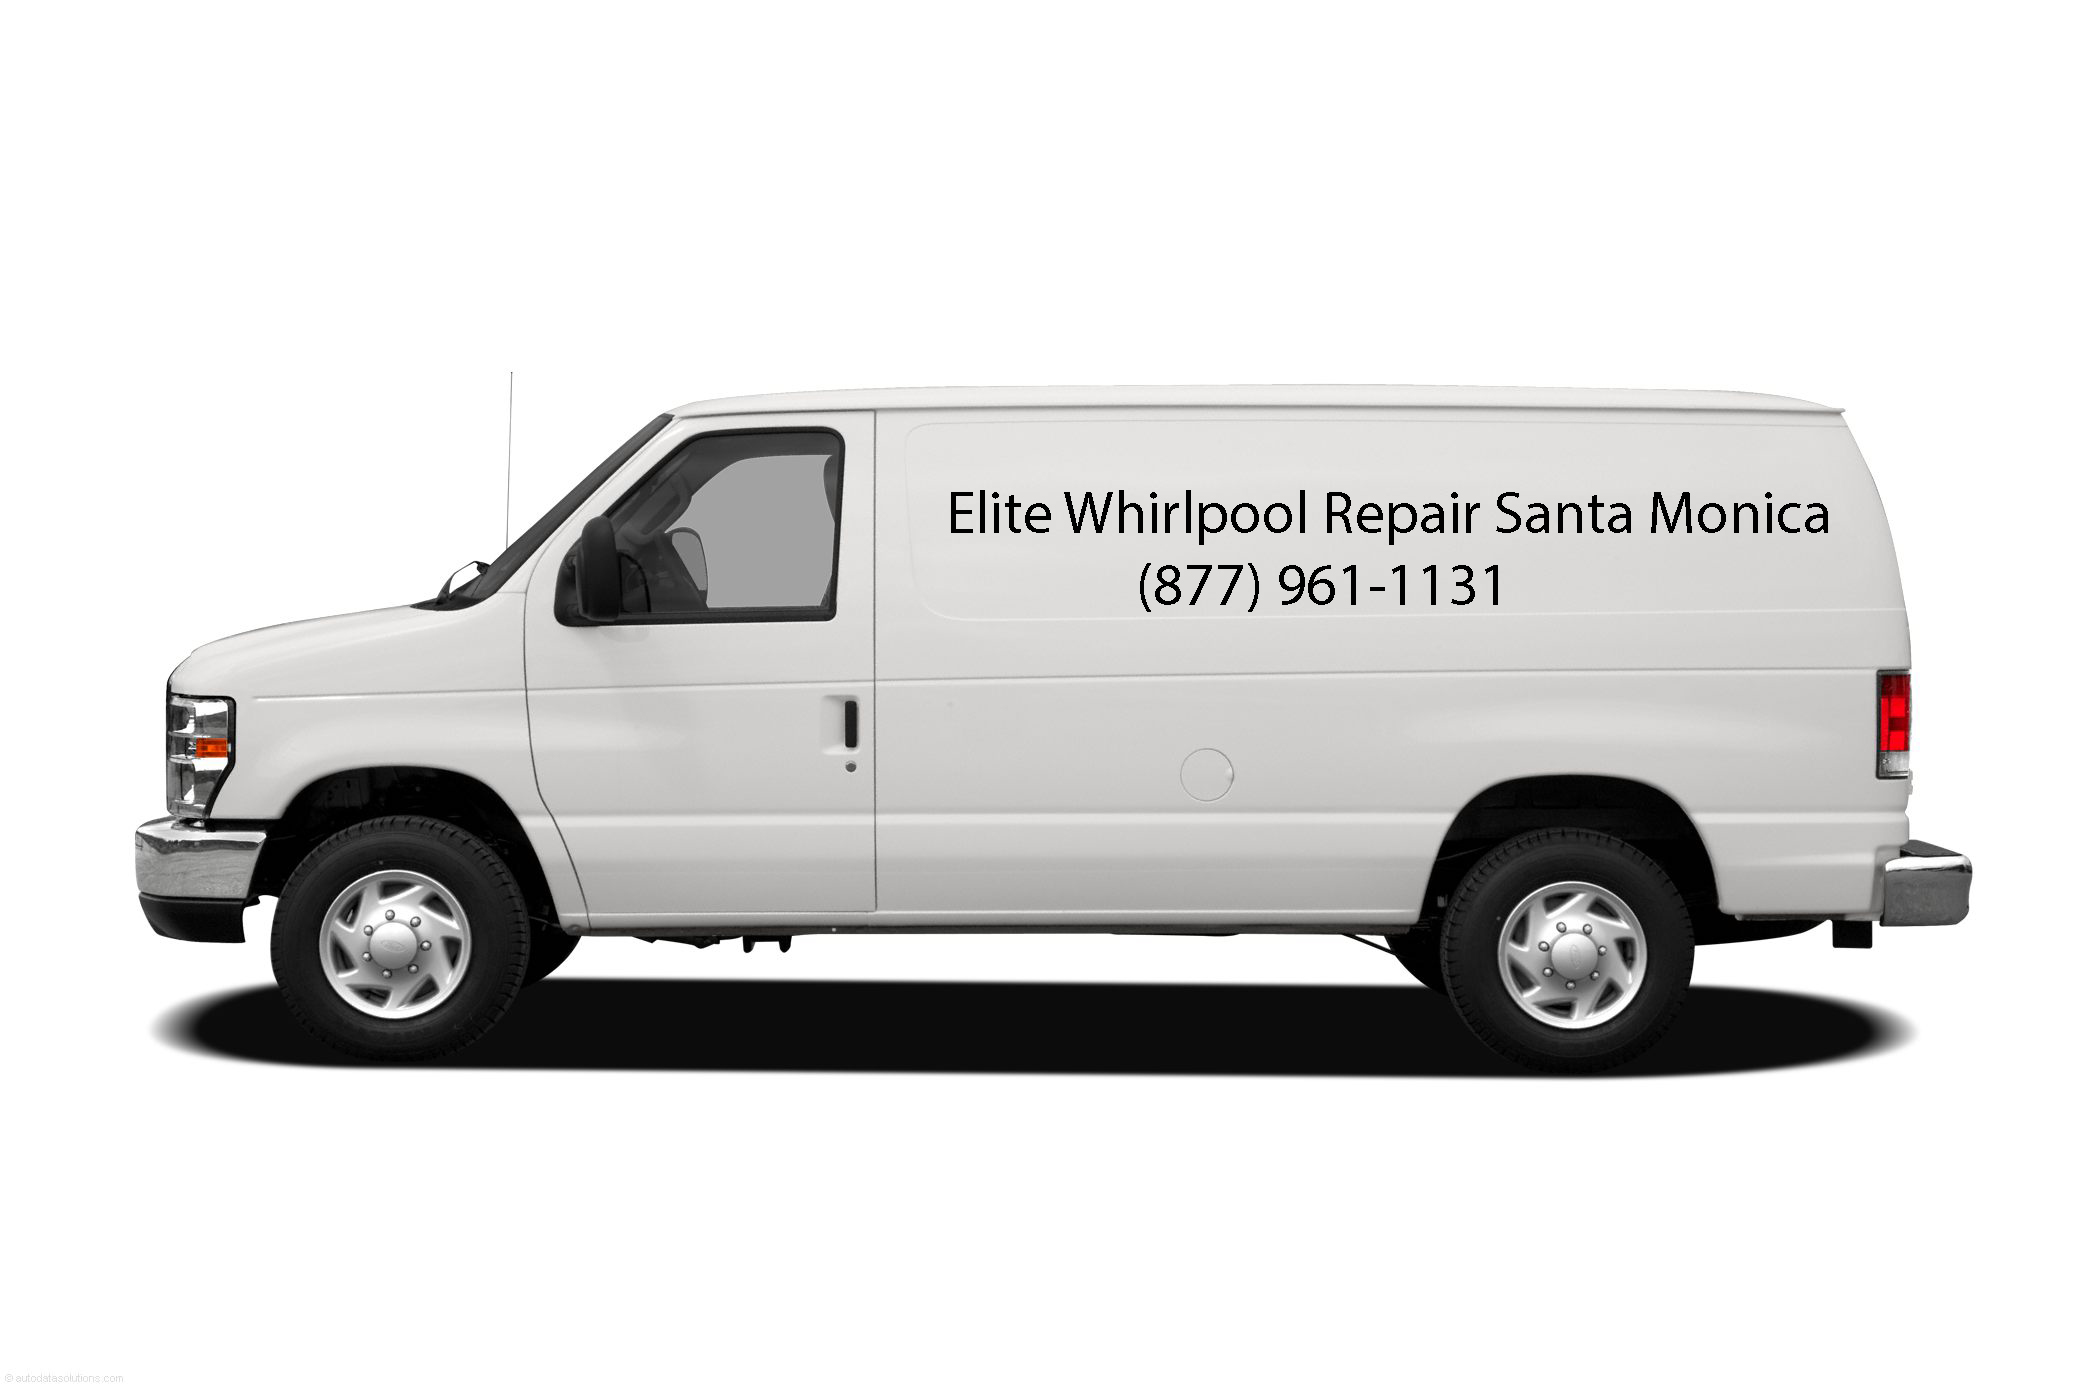 Elite Whirlpool Repair Santa Monica's Logo